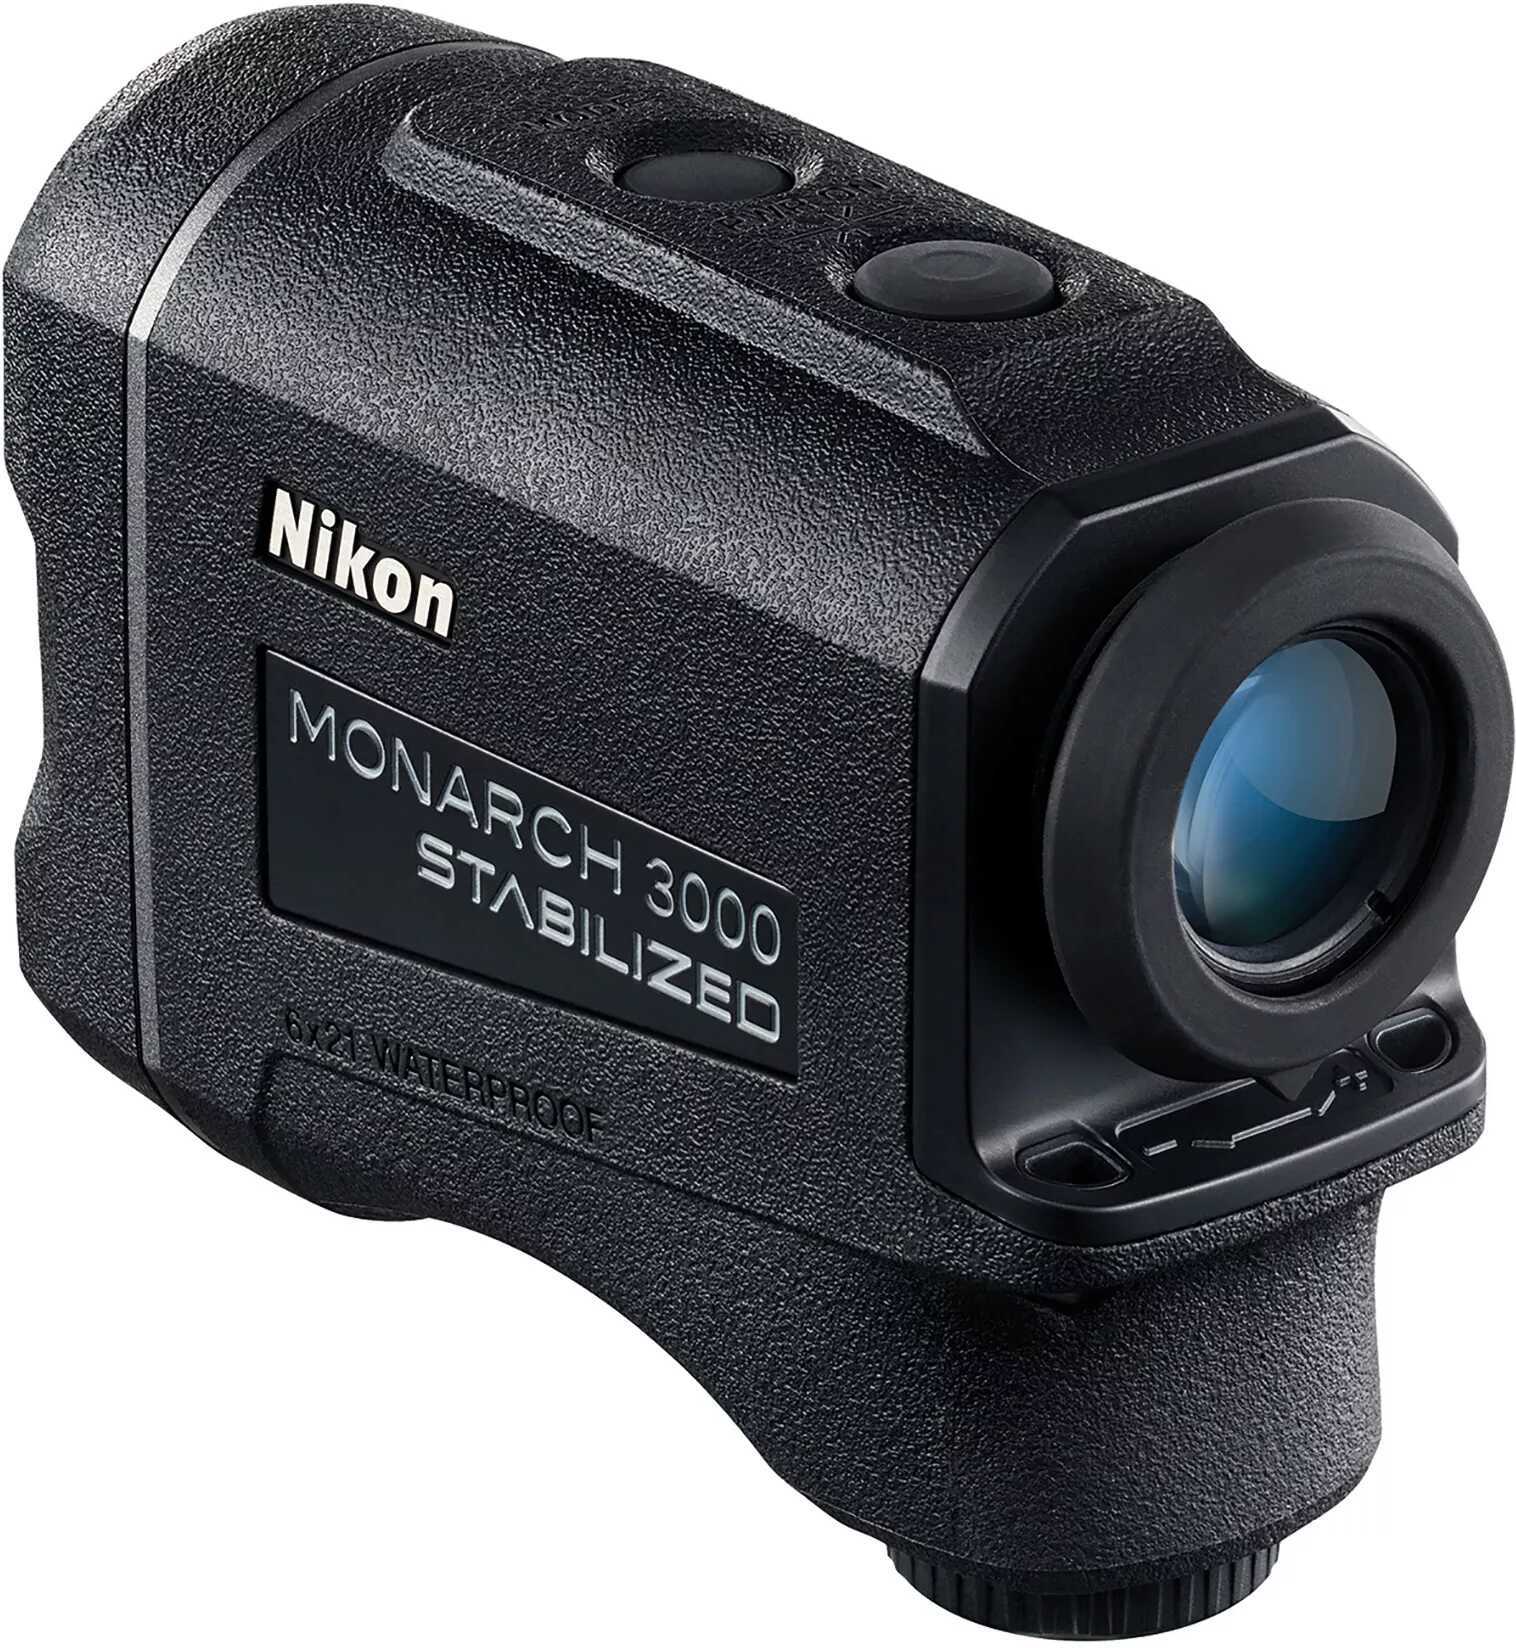 Nikon Monarch 3000 Stabilized Laster Rangefinder